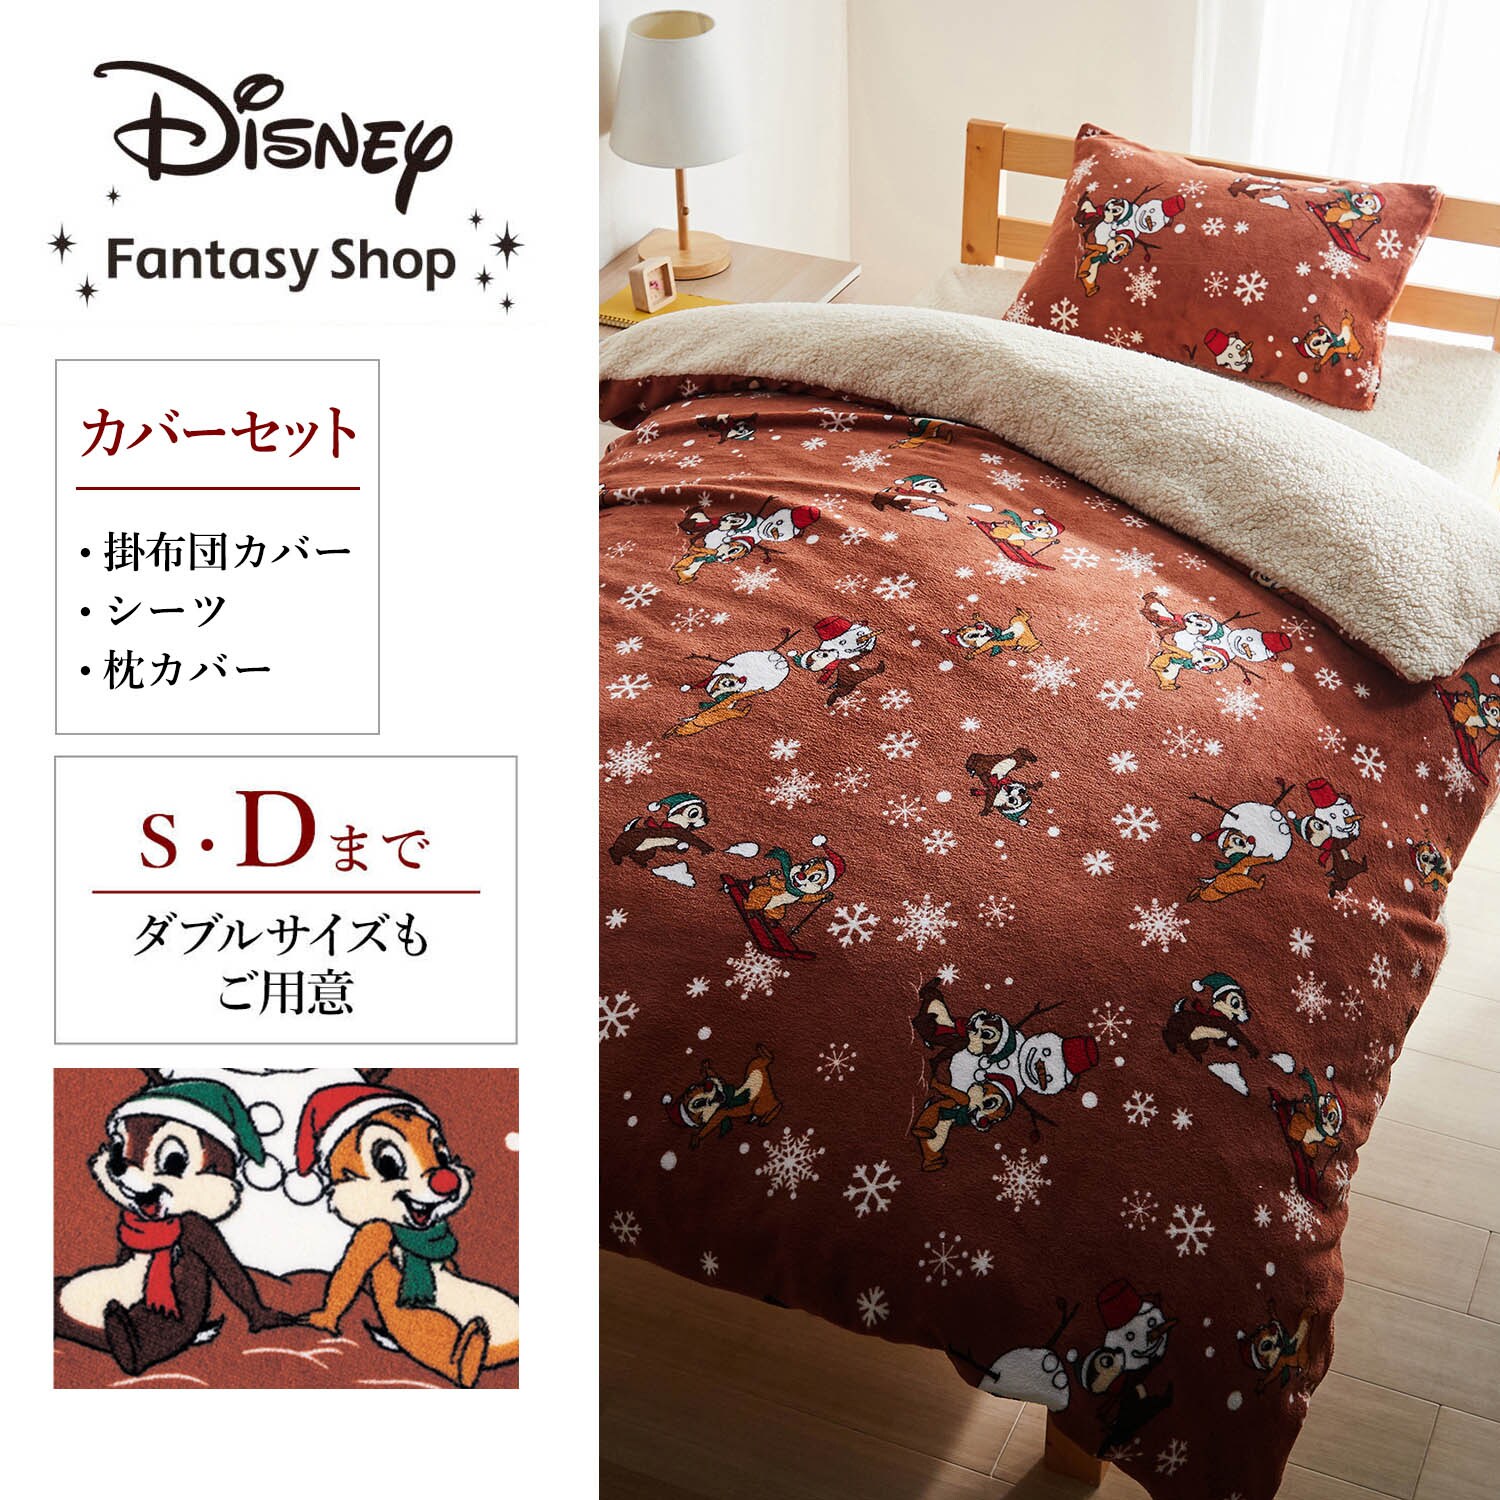 【ディズニー/Disney】マイクロファイバーの布団カバーセット(3点)(選べるキャラクター)